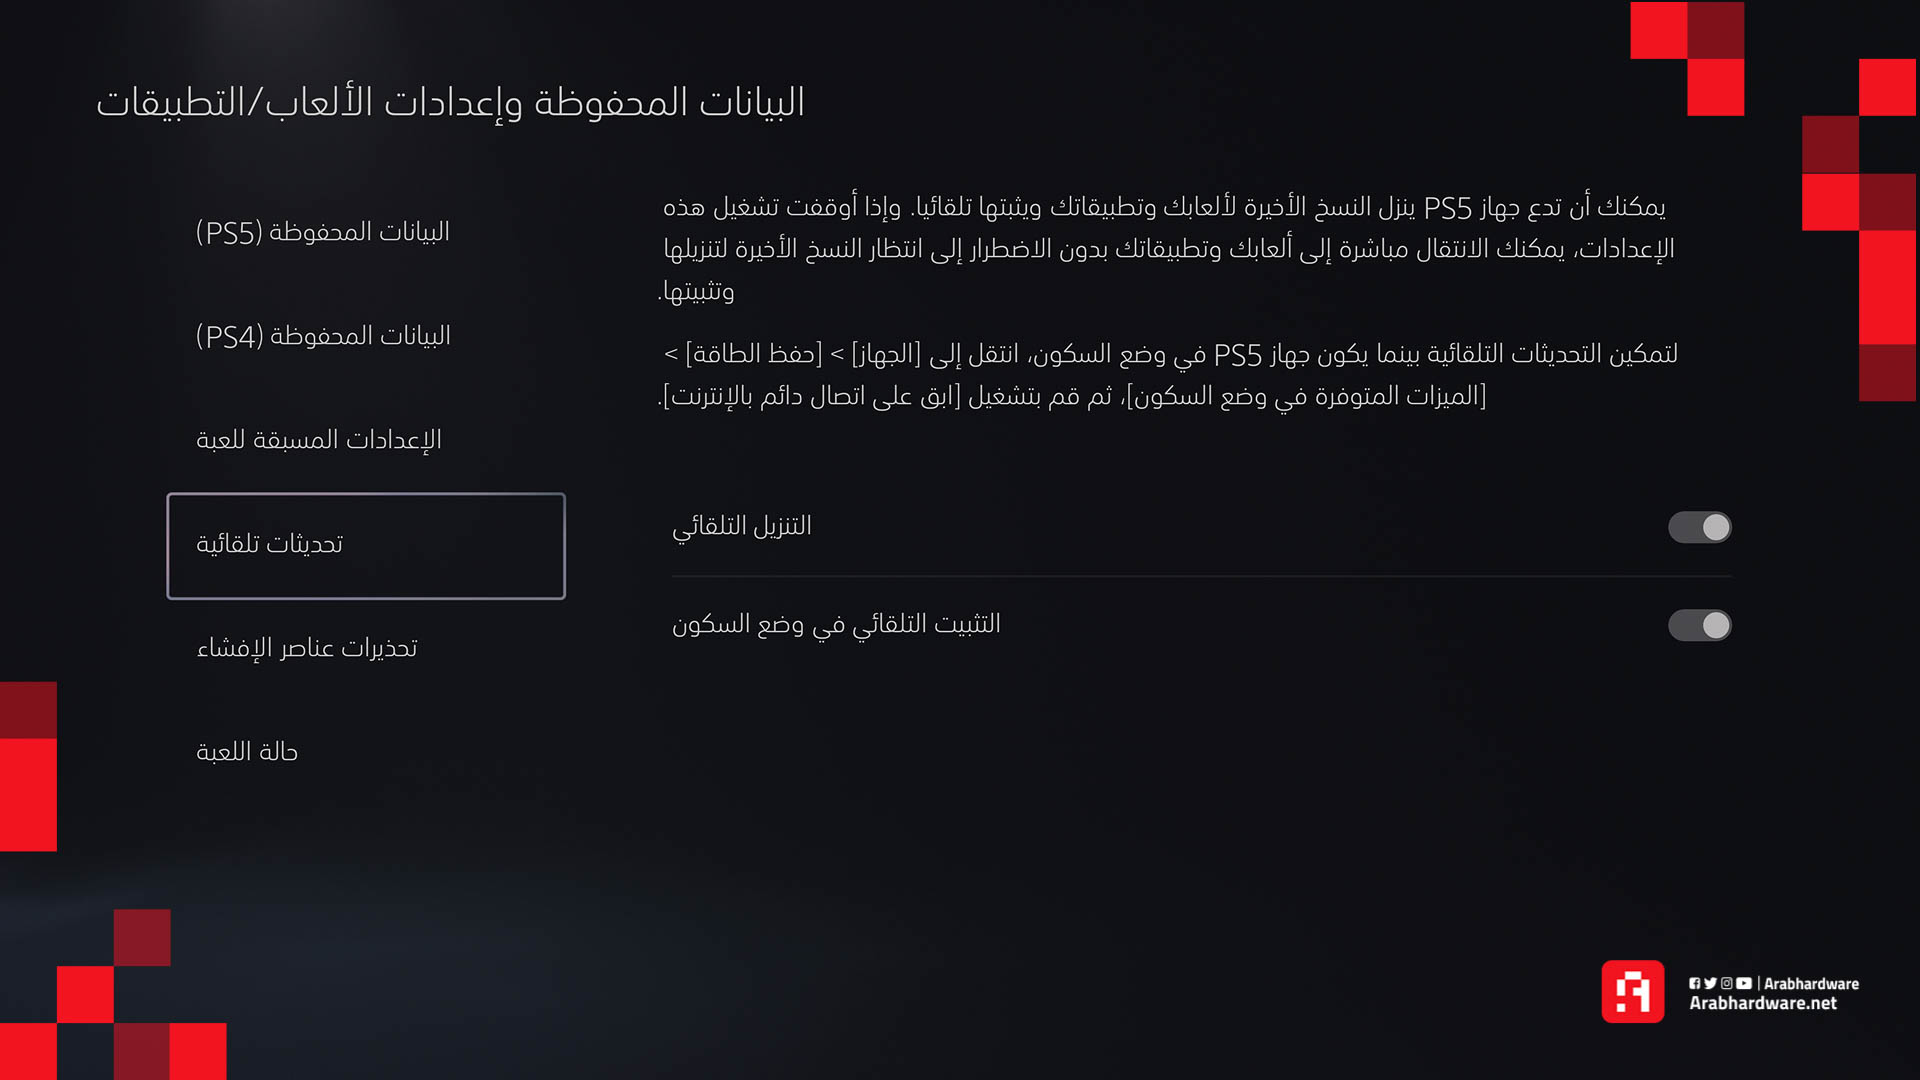 جولة تفصيلية وعميقة داخل دهاليز واجهة مستخدم PS5 والمتجر الجديد!